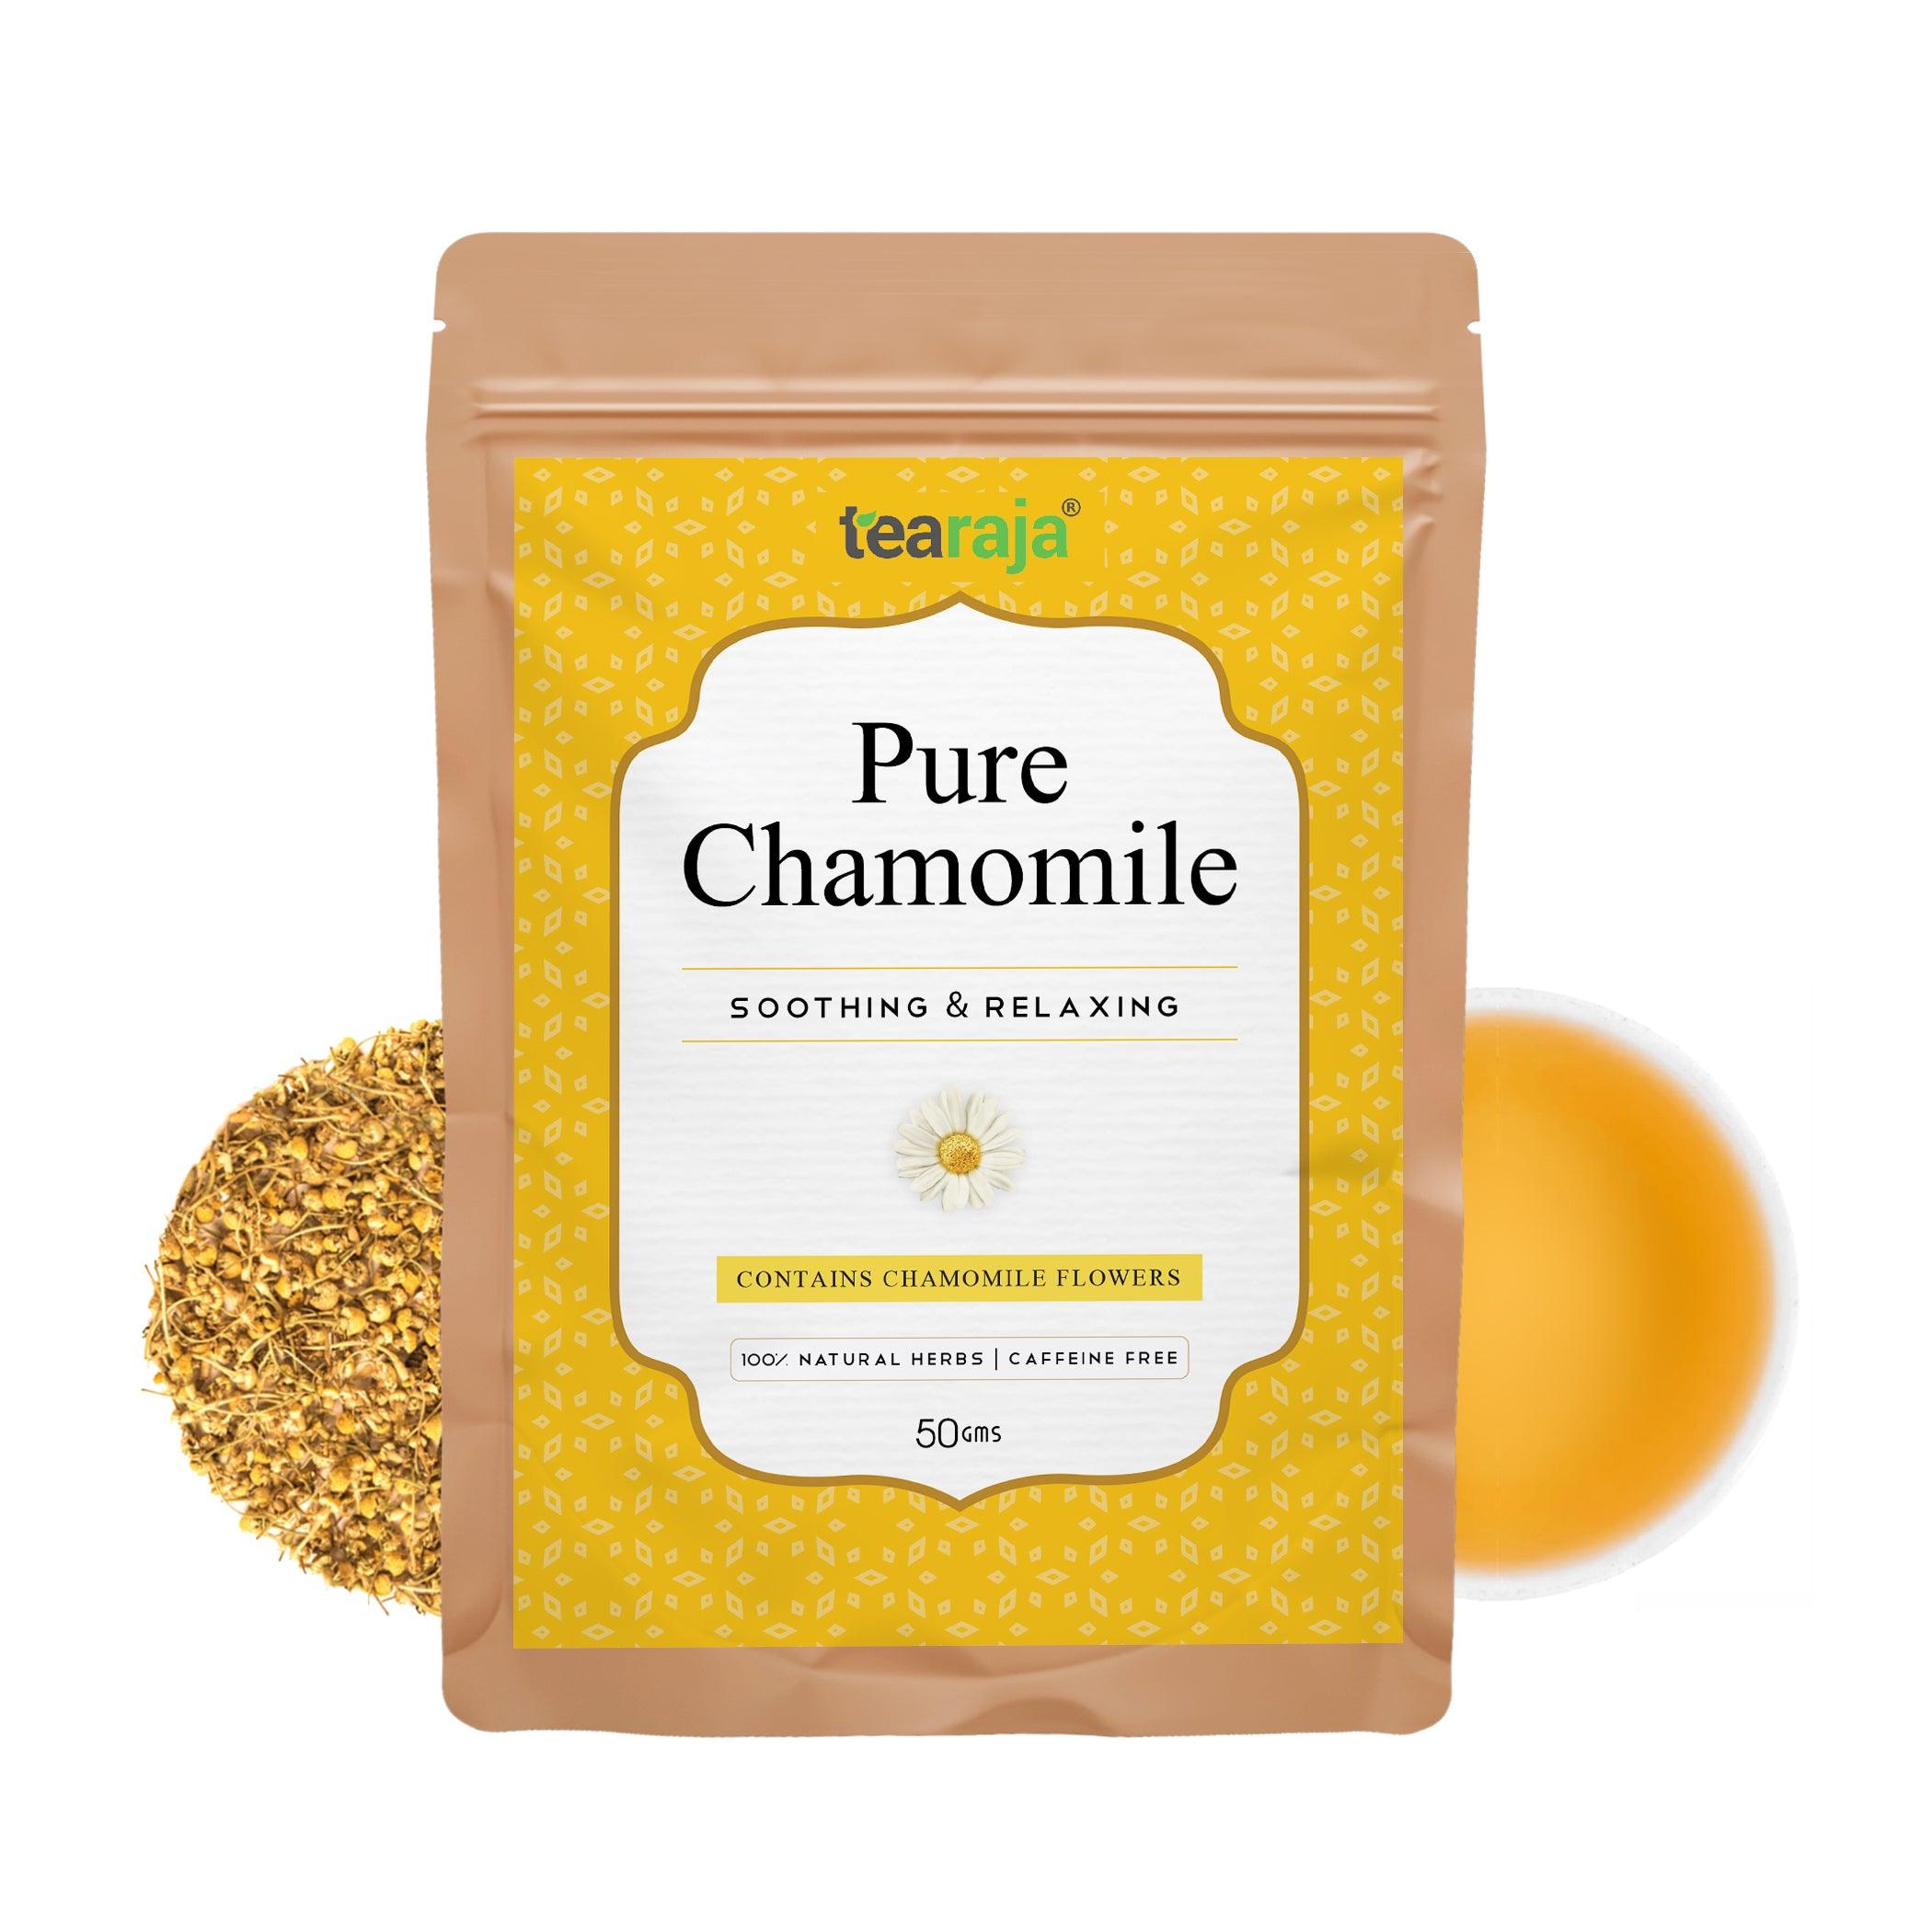 Pure Chamomile - Tearaja